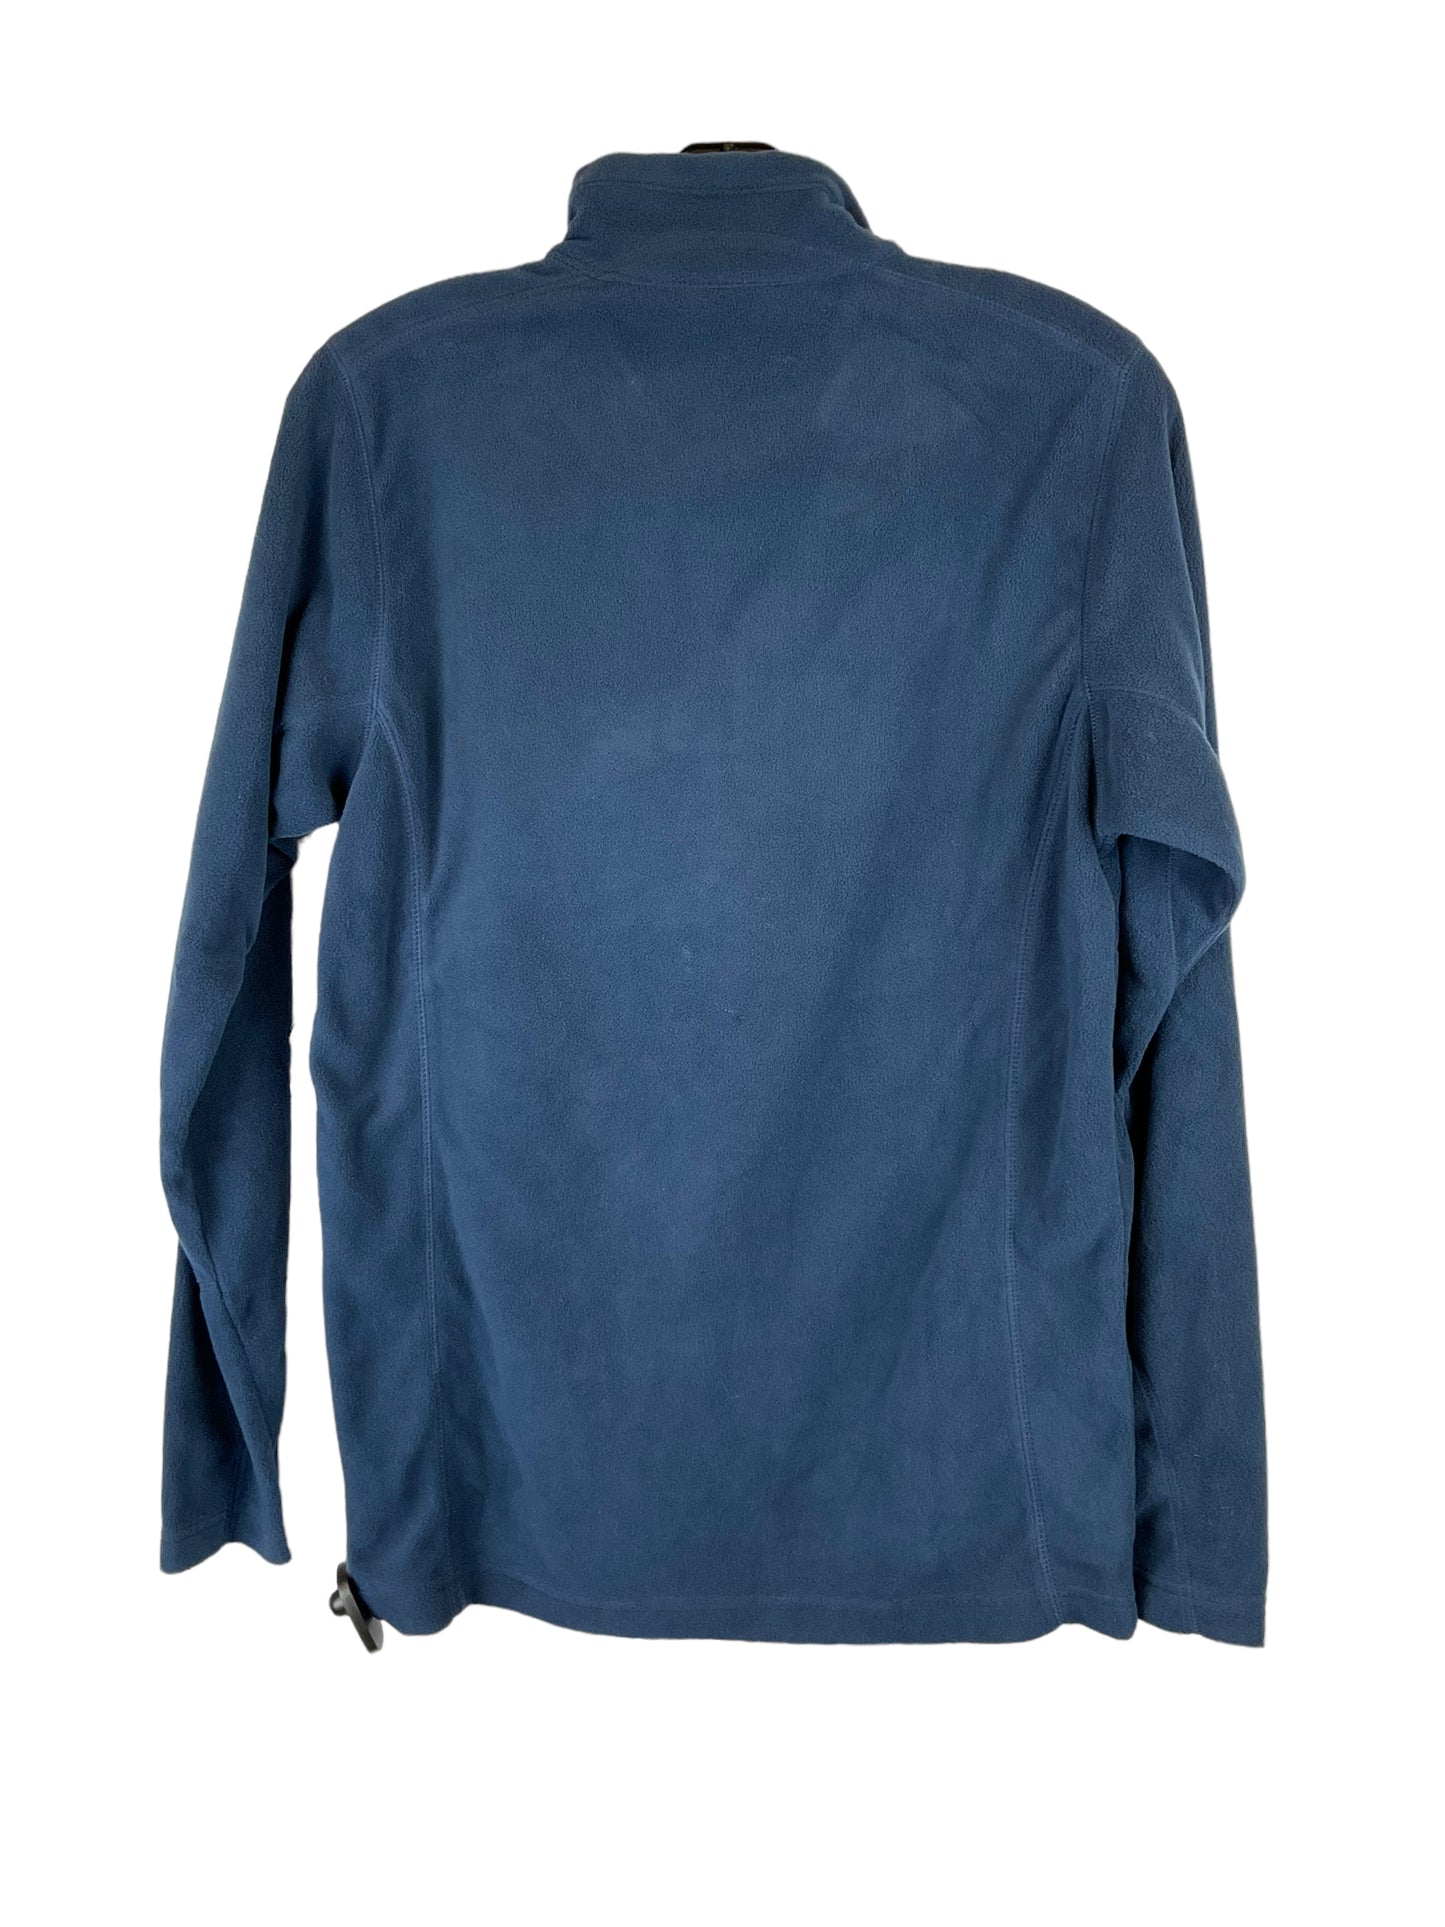 Jacket Fleece By Columbia  Size: Xs